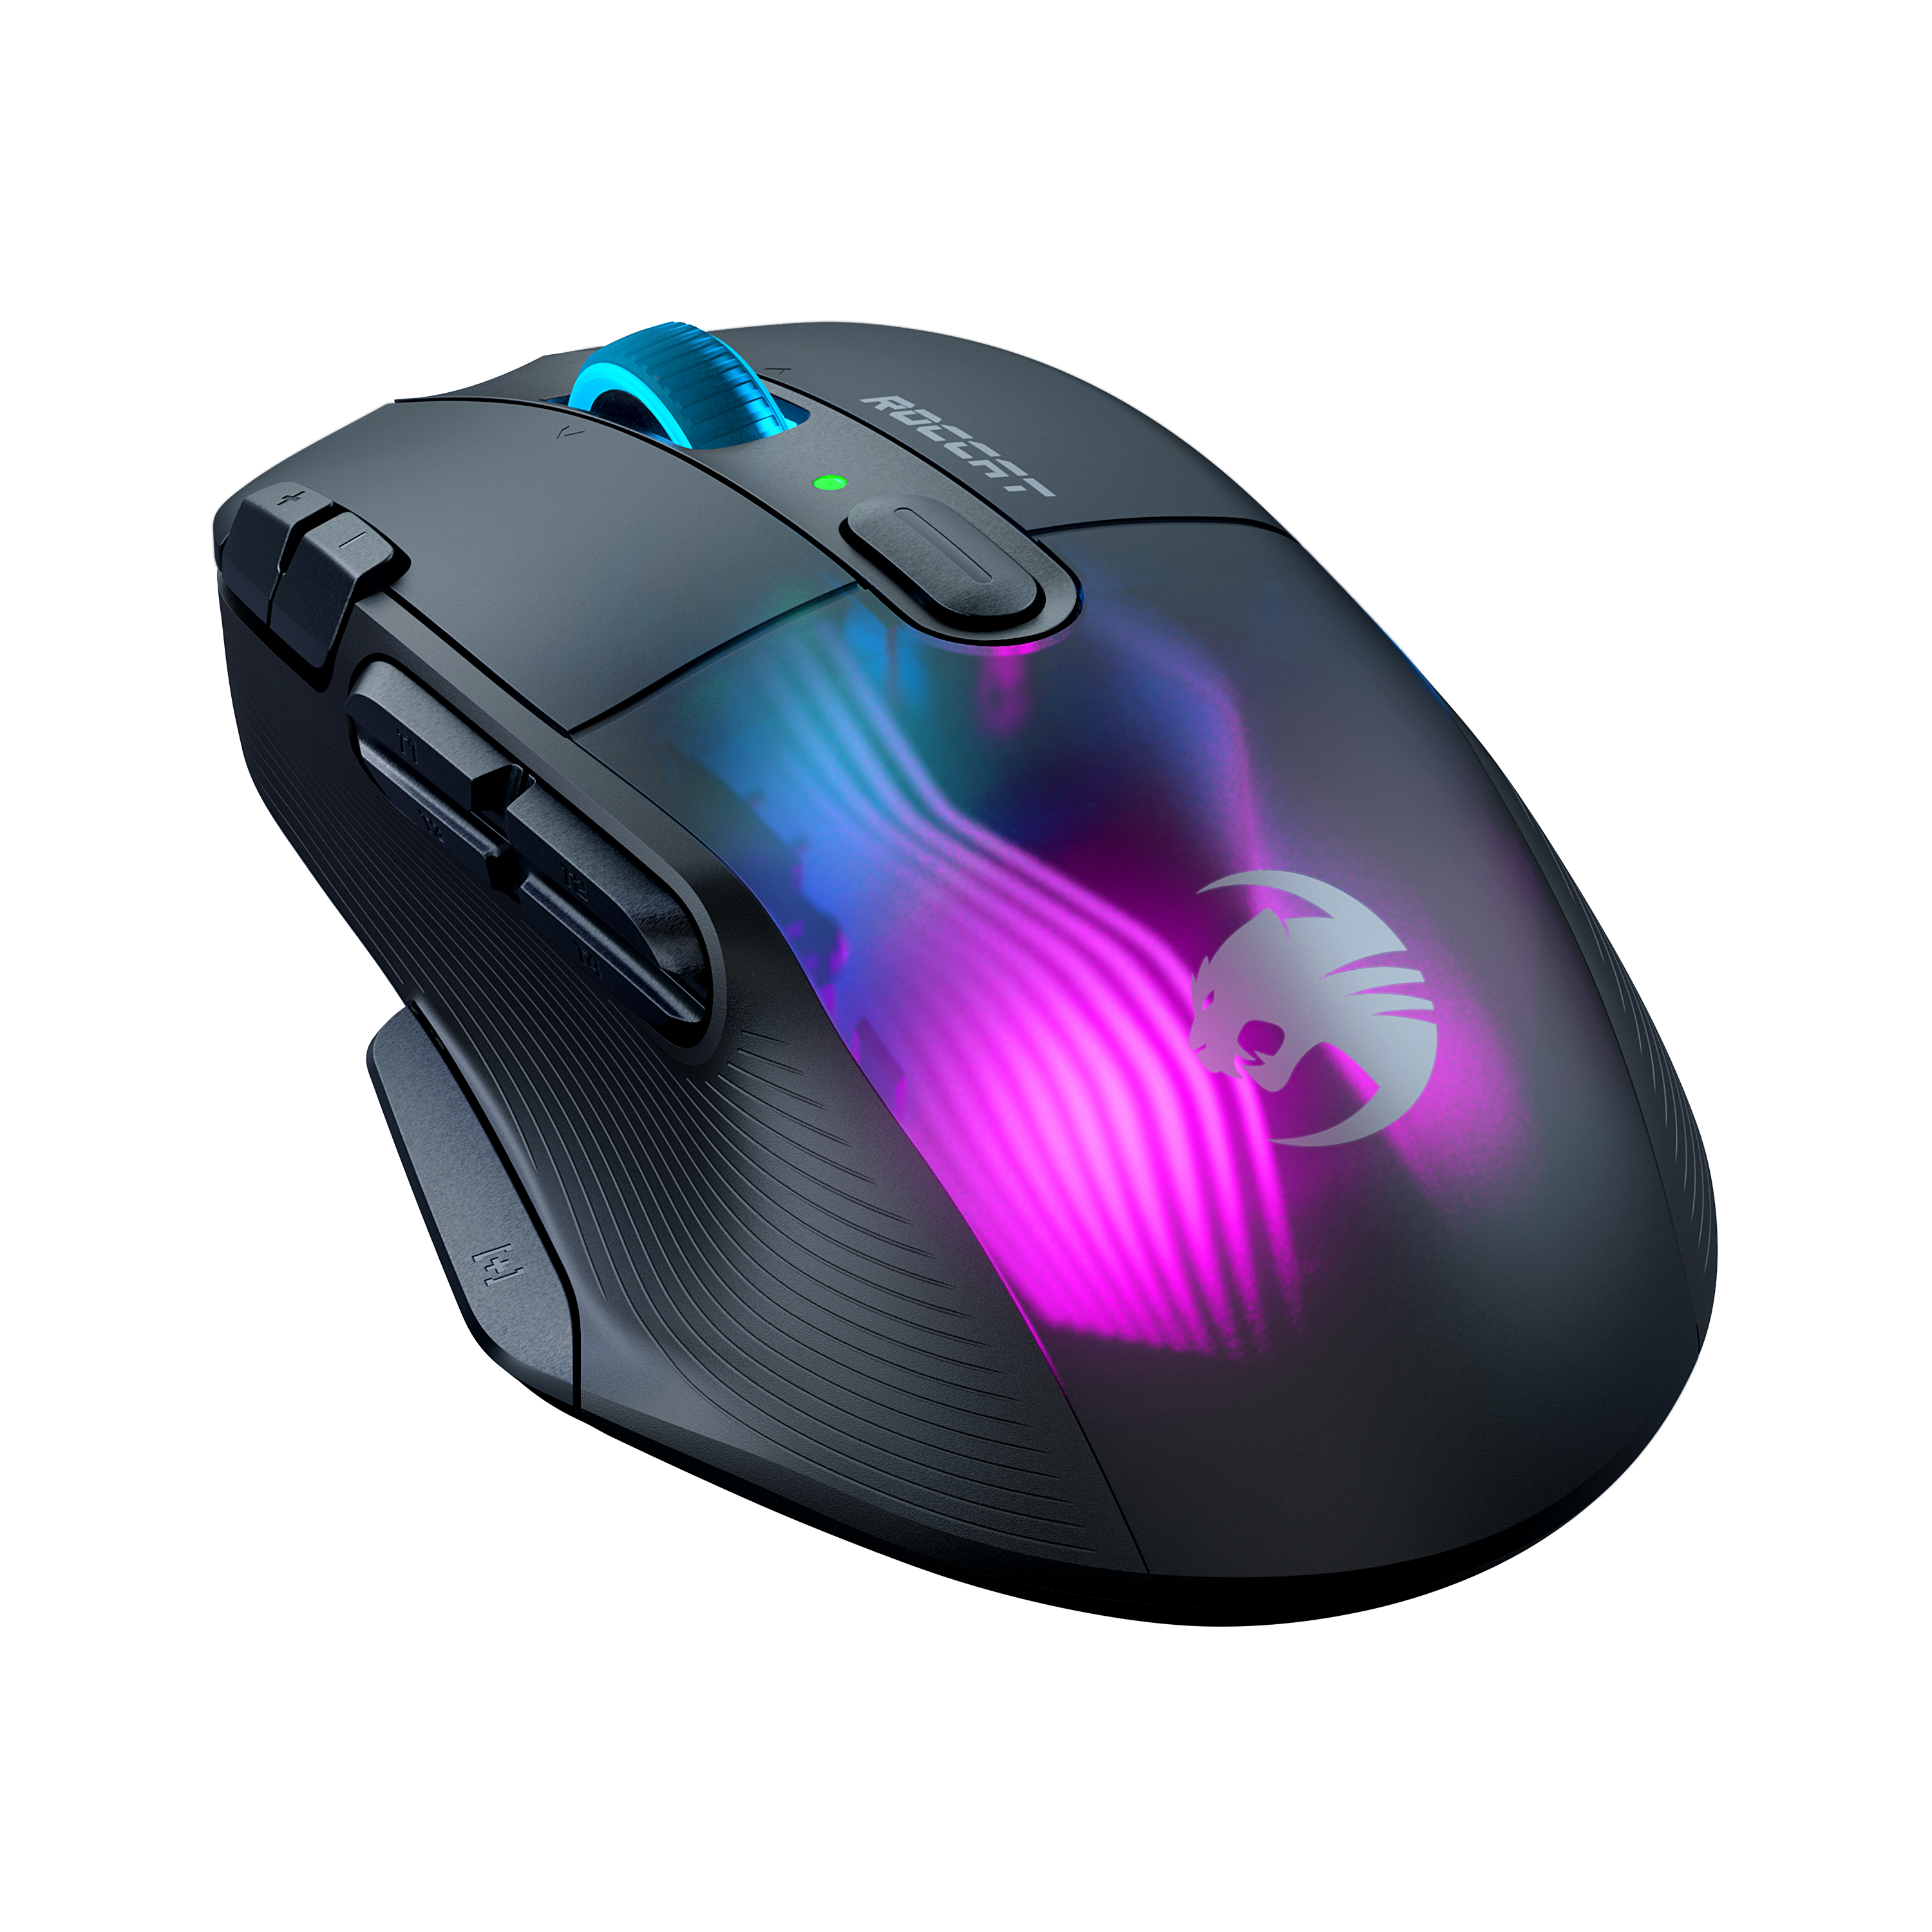 Kaufe Roccat Gaming Black Air - Versandkostenfrei XP Kone - Mouse Wireless - 